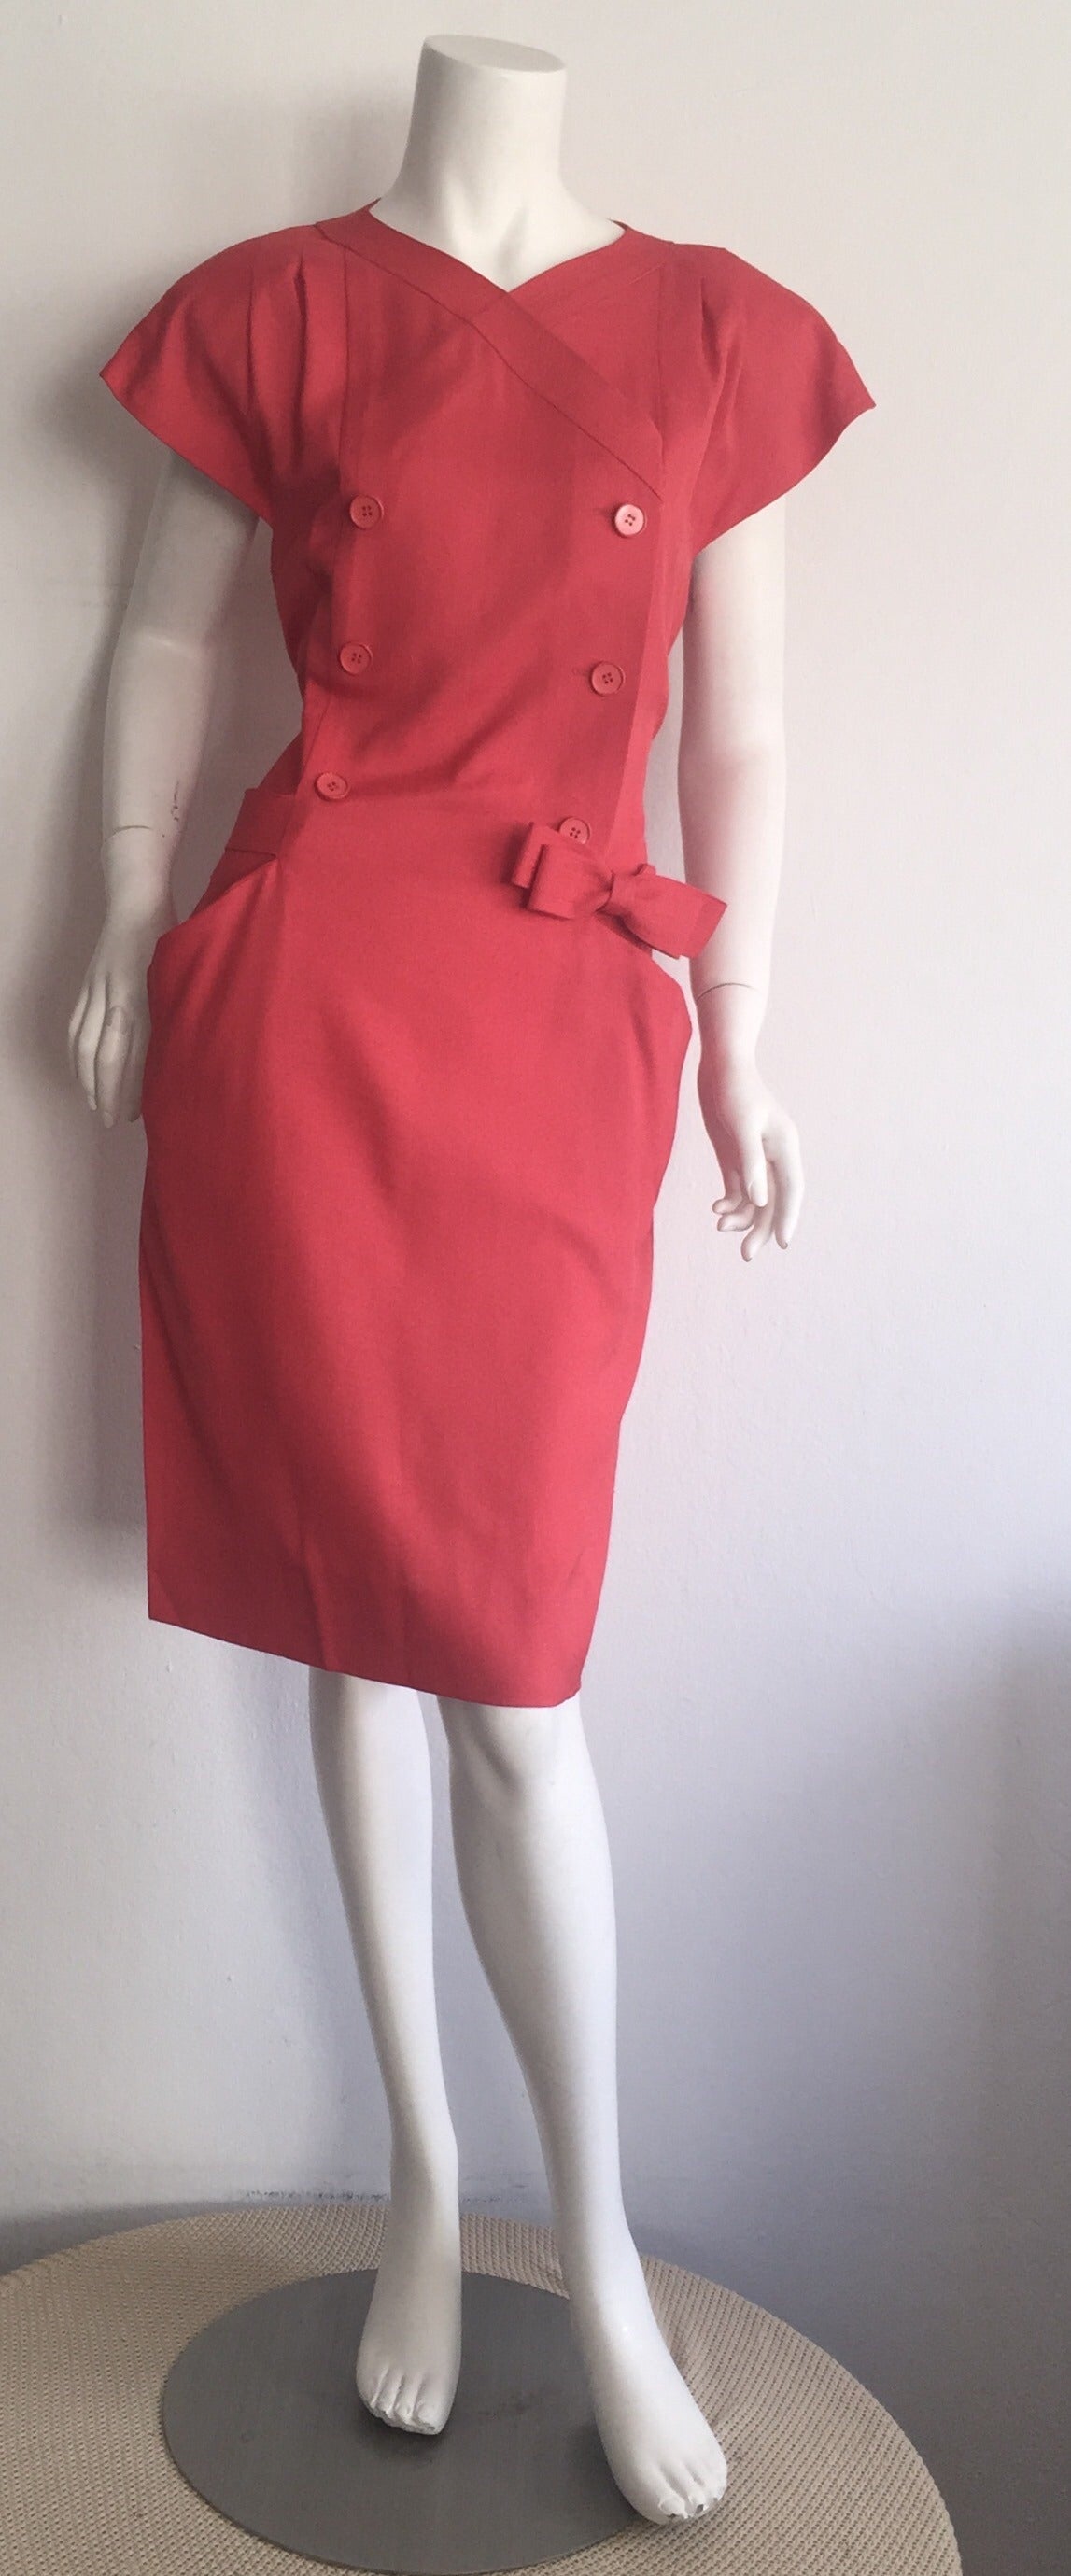 So ein hübsches Vintage Nina Ricci Kleid! Schöne himbeerrosa Farbe, auf einem Zweireiher Stil! Der angebrachte Schleifengürtel verläuft um den Rücken und wird an der Vorderseite mit Haken und Ösen geschlossen. Taschen an beiden Seiten der Taille.